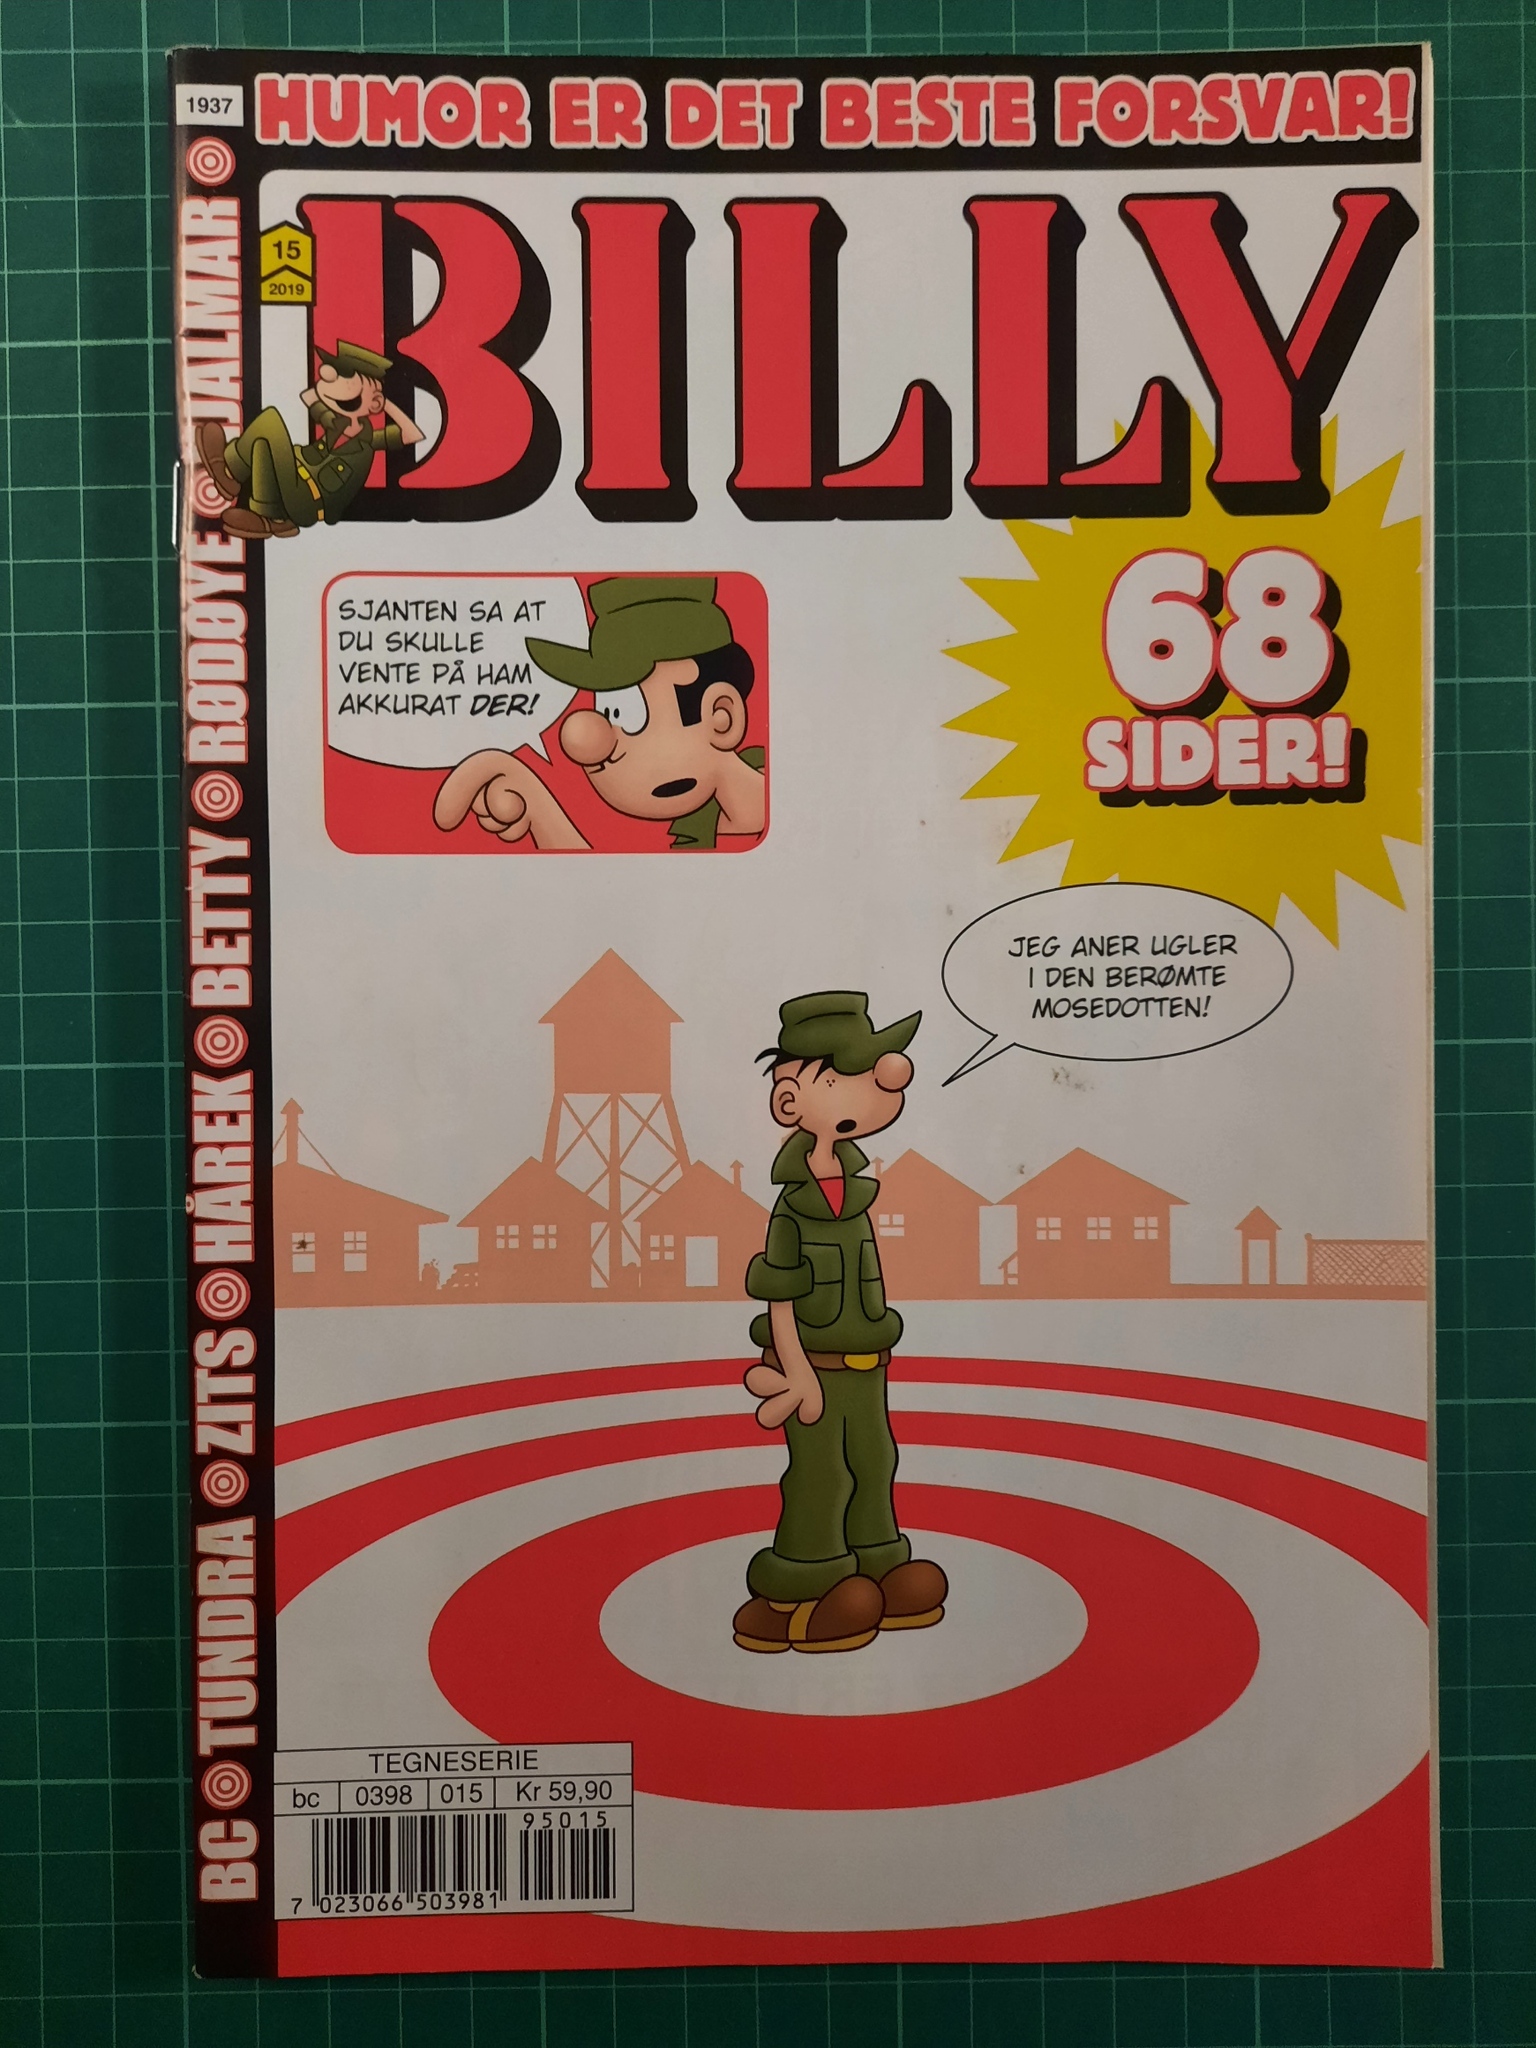 Billy 2019 - 15